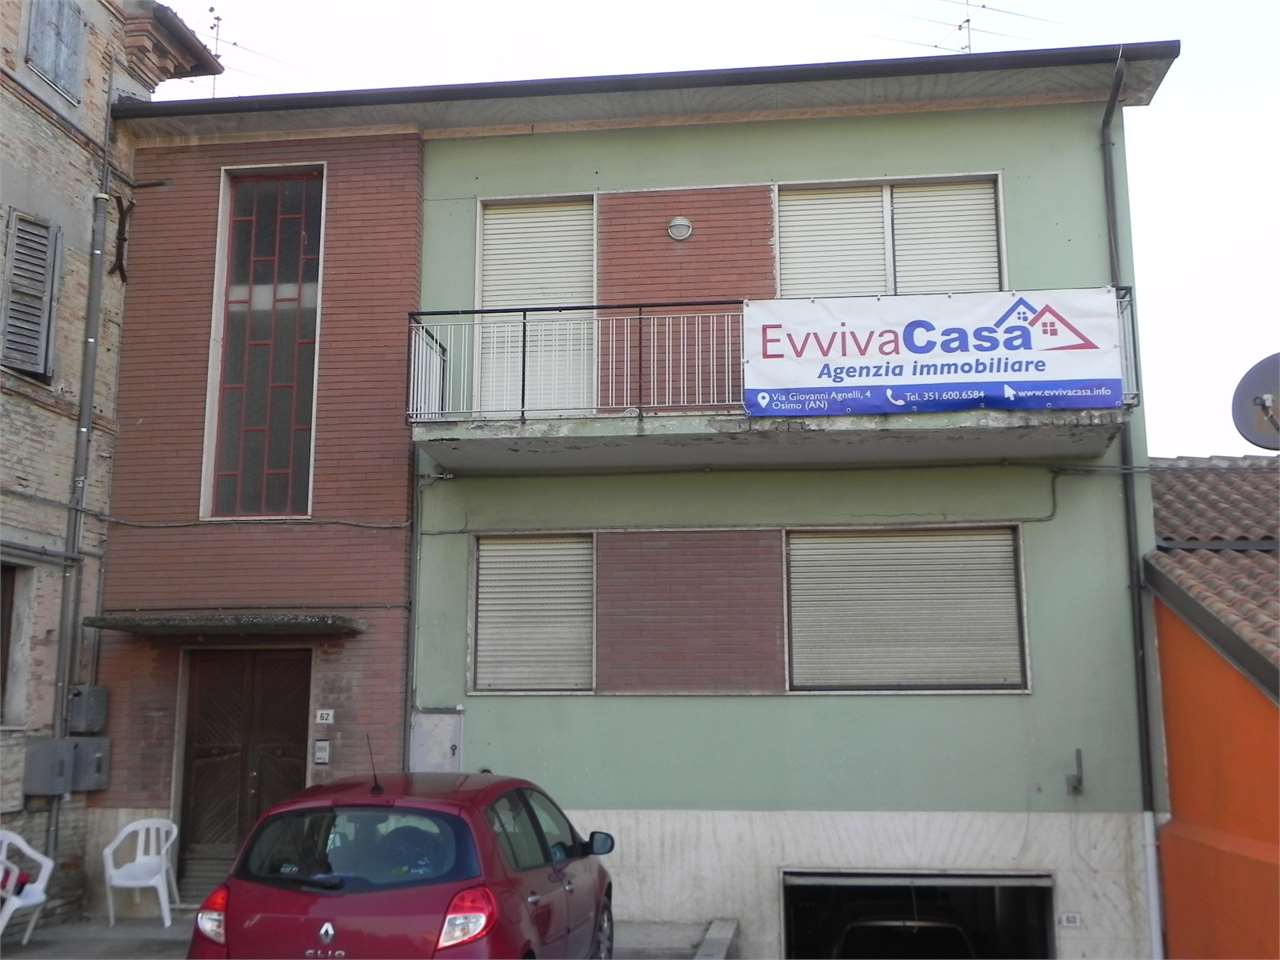 Palazzo / Stabile in vendita a Ostra, 8 locali, zona Zona: Casine, prezzo € 100.000 | CambioCasa.it